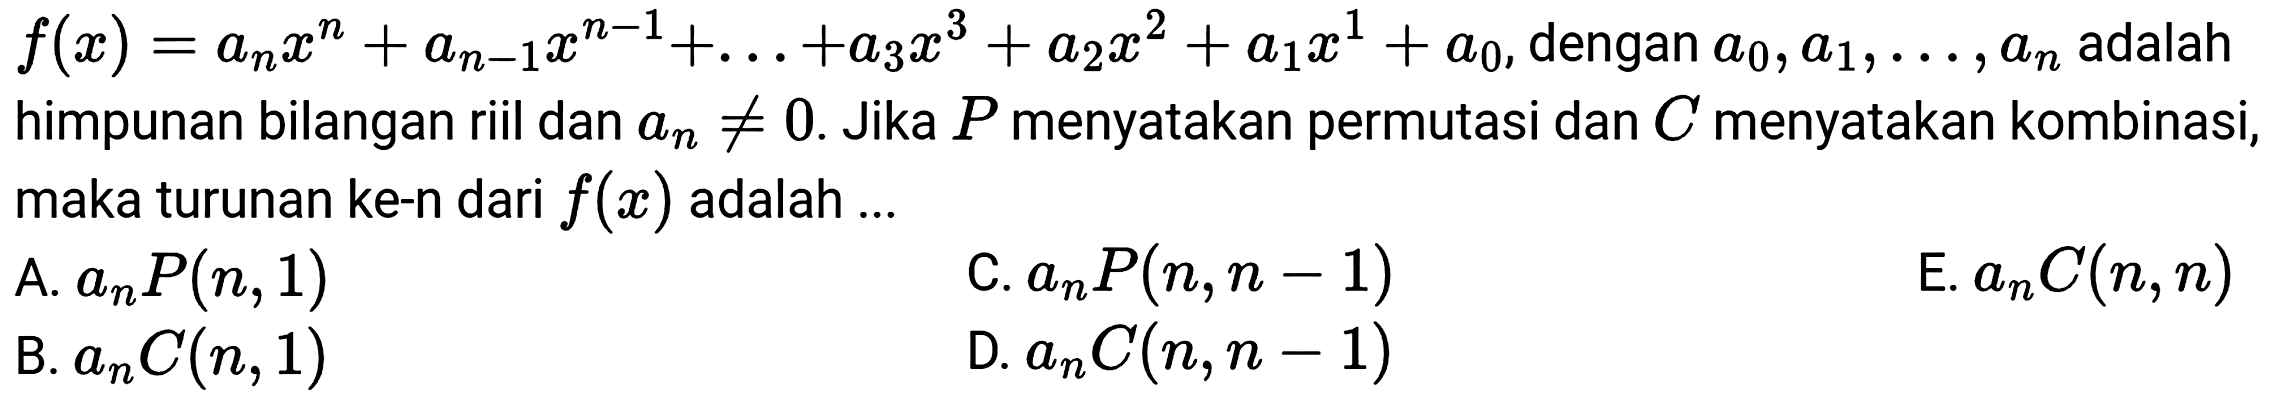  f(x)=a_(n) x^(n)+a_(n-1) x^(n-1)+...+a_(3) x^(3)+a_(2) x^(2)+a_(1) x^(1)+a_(0) , dengan  a_(0), a_(1), ..., a_(n)  adalah himpunan bilangan riil dan  a_(n) =/= 0 . Jika  P  menyatakan permutasi dan  C  menyatakan kombinasi, maka turunan ke-n dari  f(x)  adalah ...
A.  a_(n) P(n, 1) 
C.  a_(n) P(n, n-1) 
E.  a_(n) C(n, n) 
B.  a_(n) C(n, 1) 
D.  a_(n) C(n, n-1) 